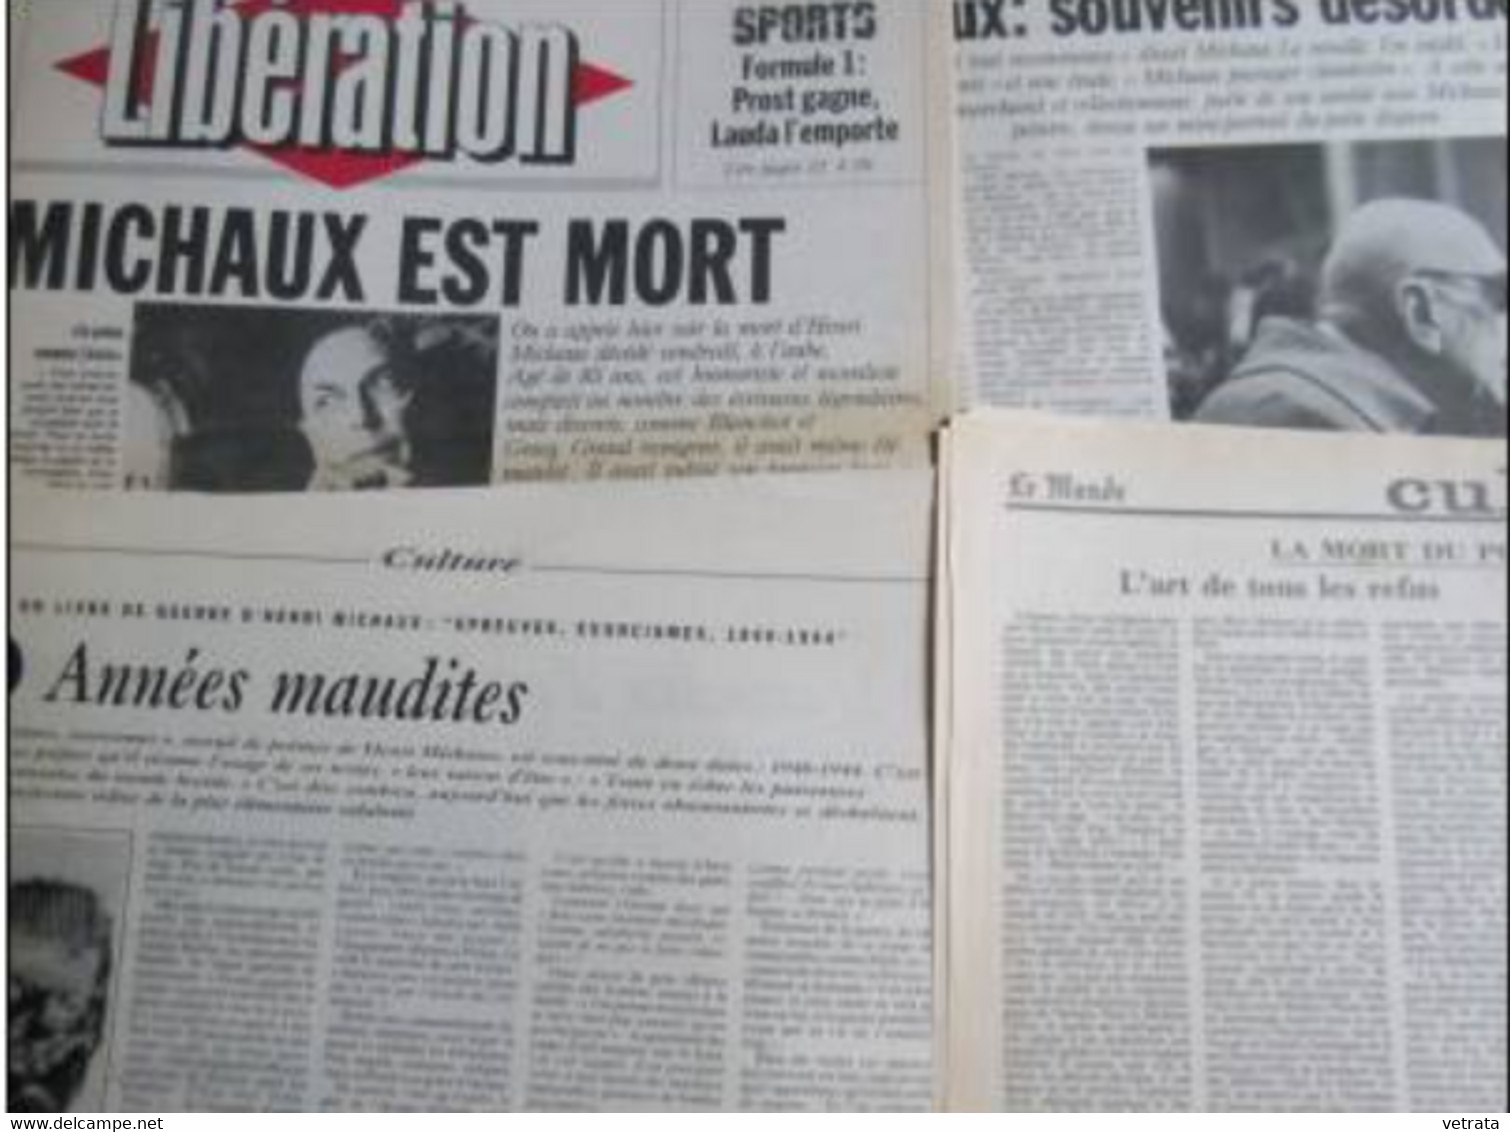 Henri Michaux : 2 N° Du Magazine Littéraire - Dossier Composé De 8 Coupures De Presse  & 1 Suppl. Libération Livres - Journaux Anciens - Avant 1800